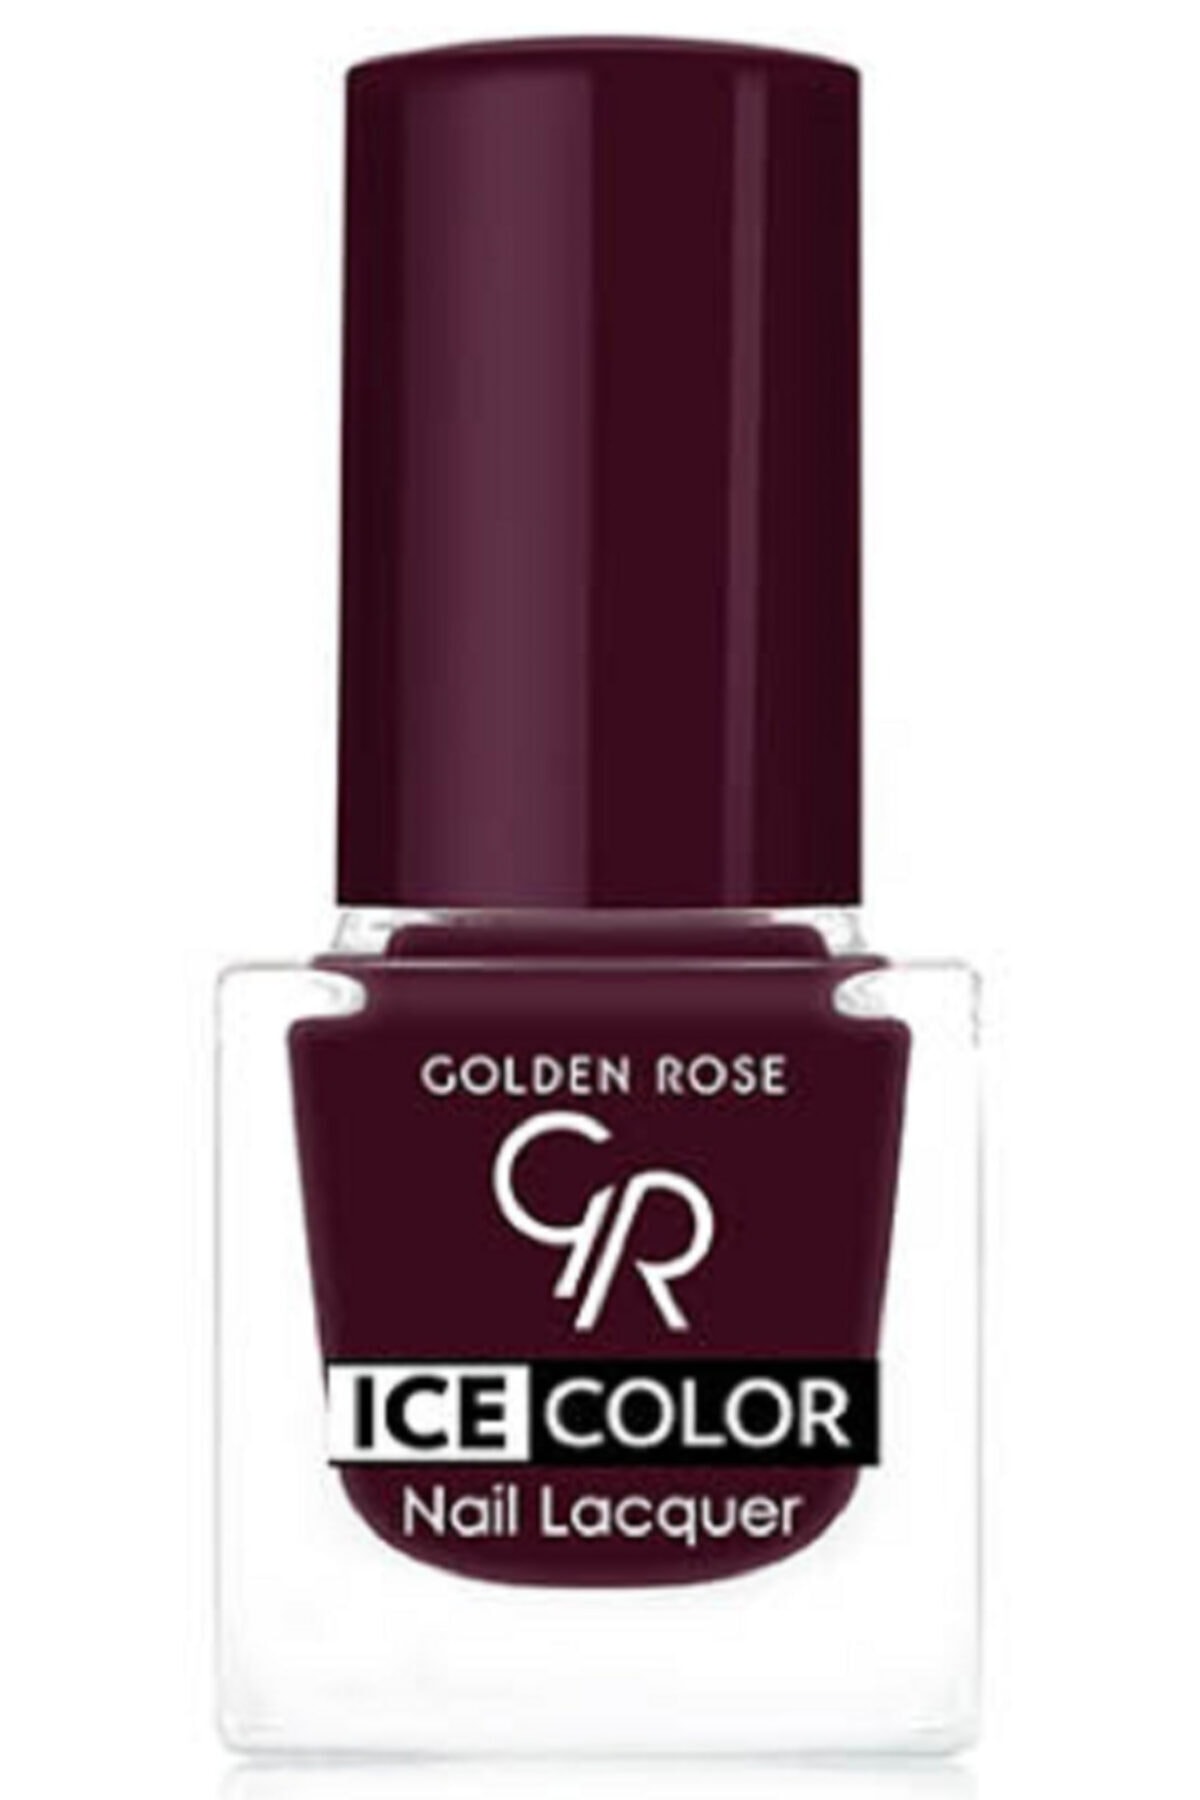 لاک ناخن یخی آیس چیک ICE شماره 152 رنگ آبی گلدن رز Golden Rose